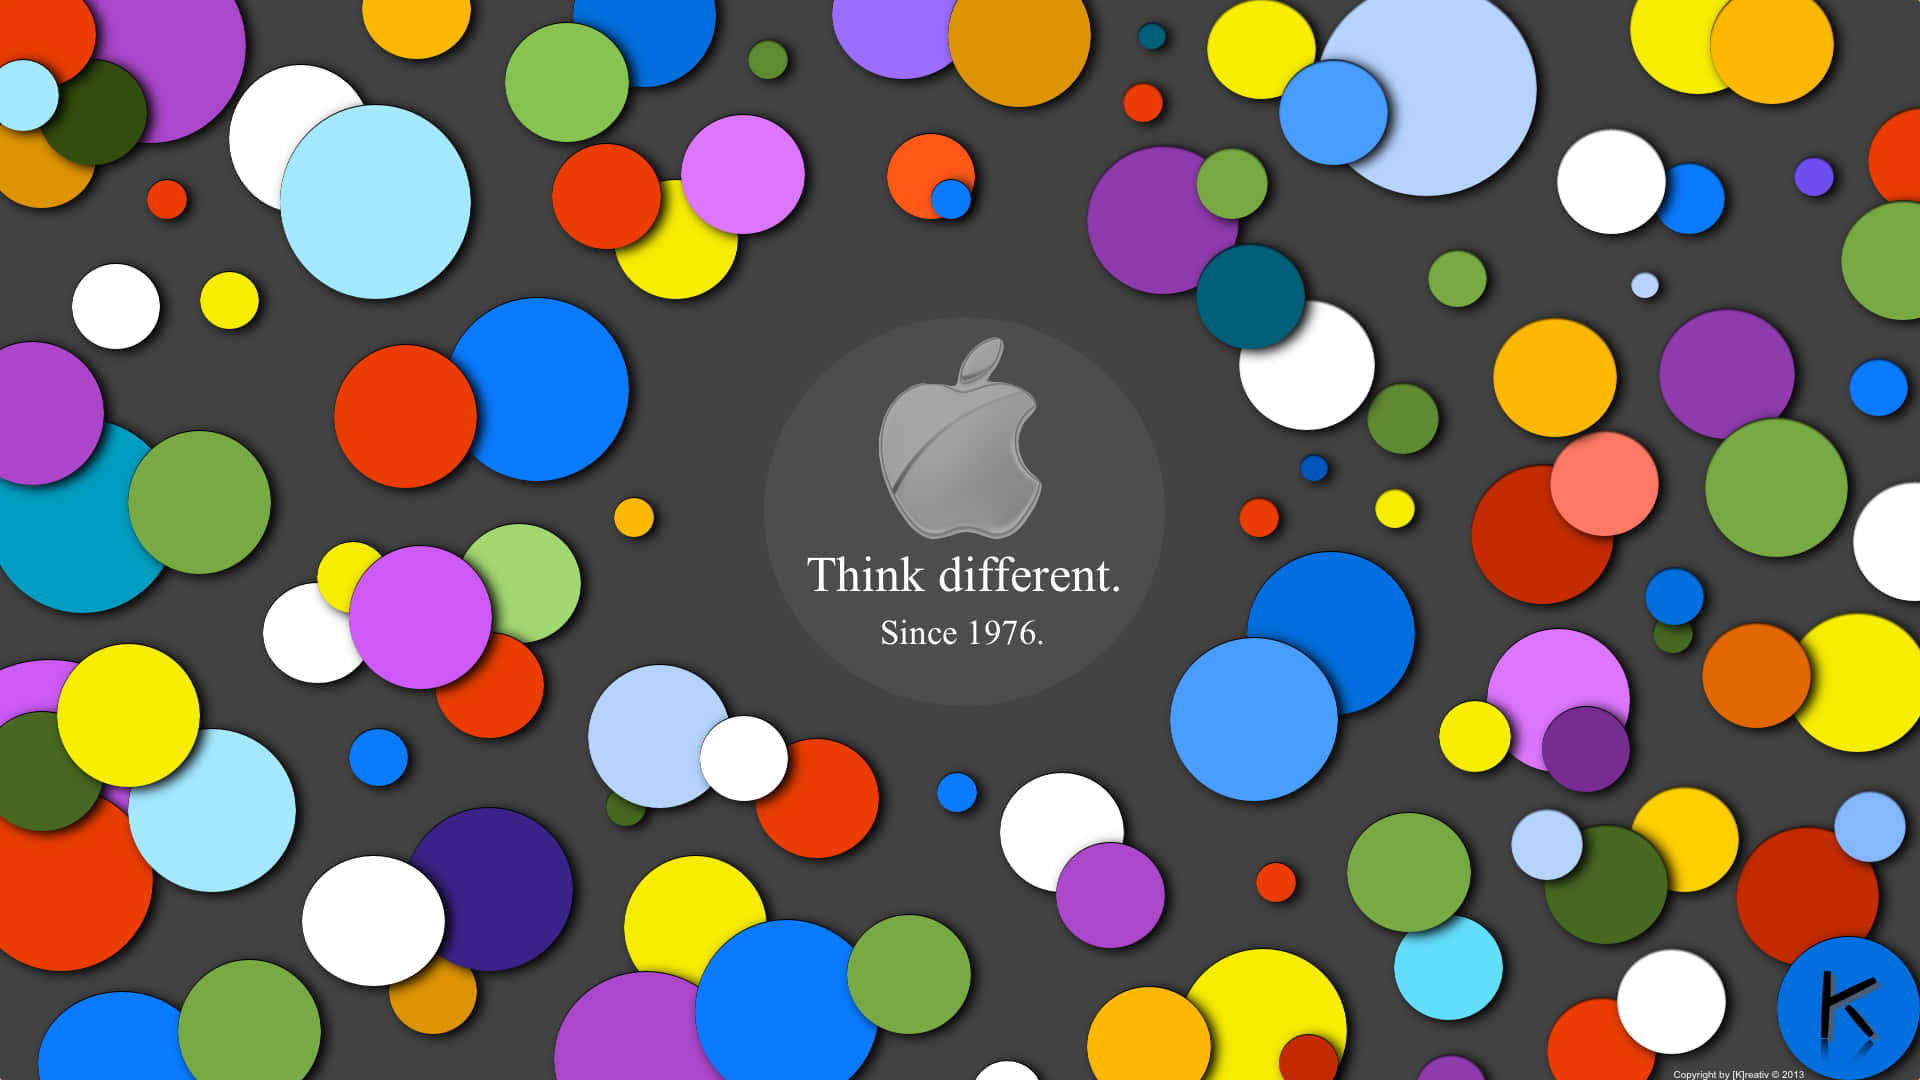 Logode Apple Con Círculos Coloridos En Un Fondo Oscuro Fondo de pantalla